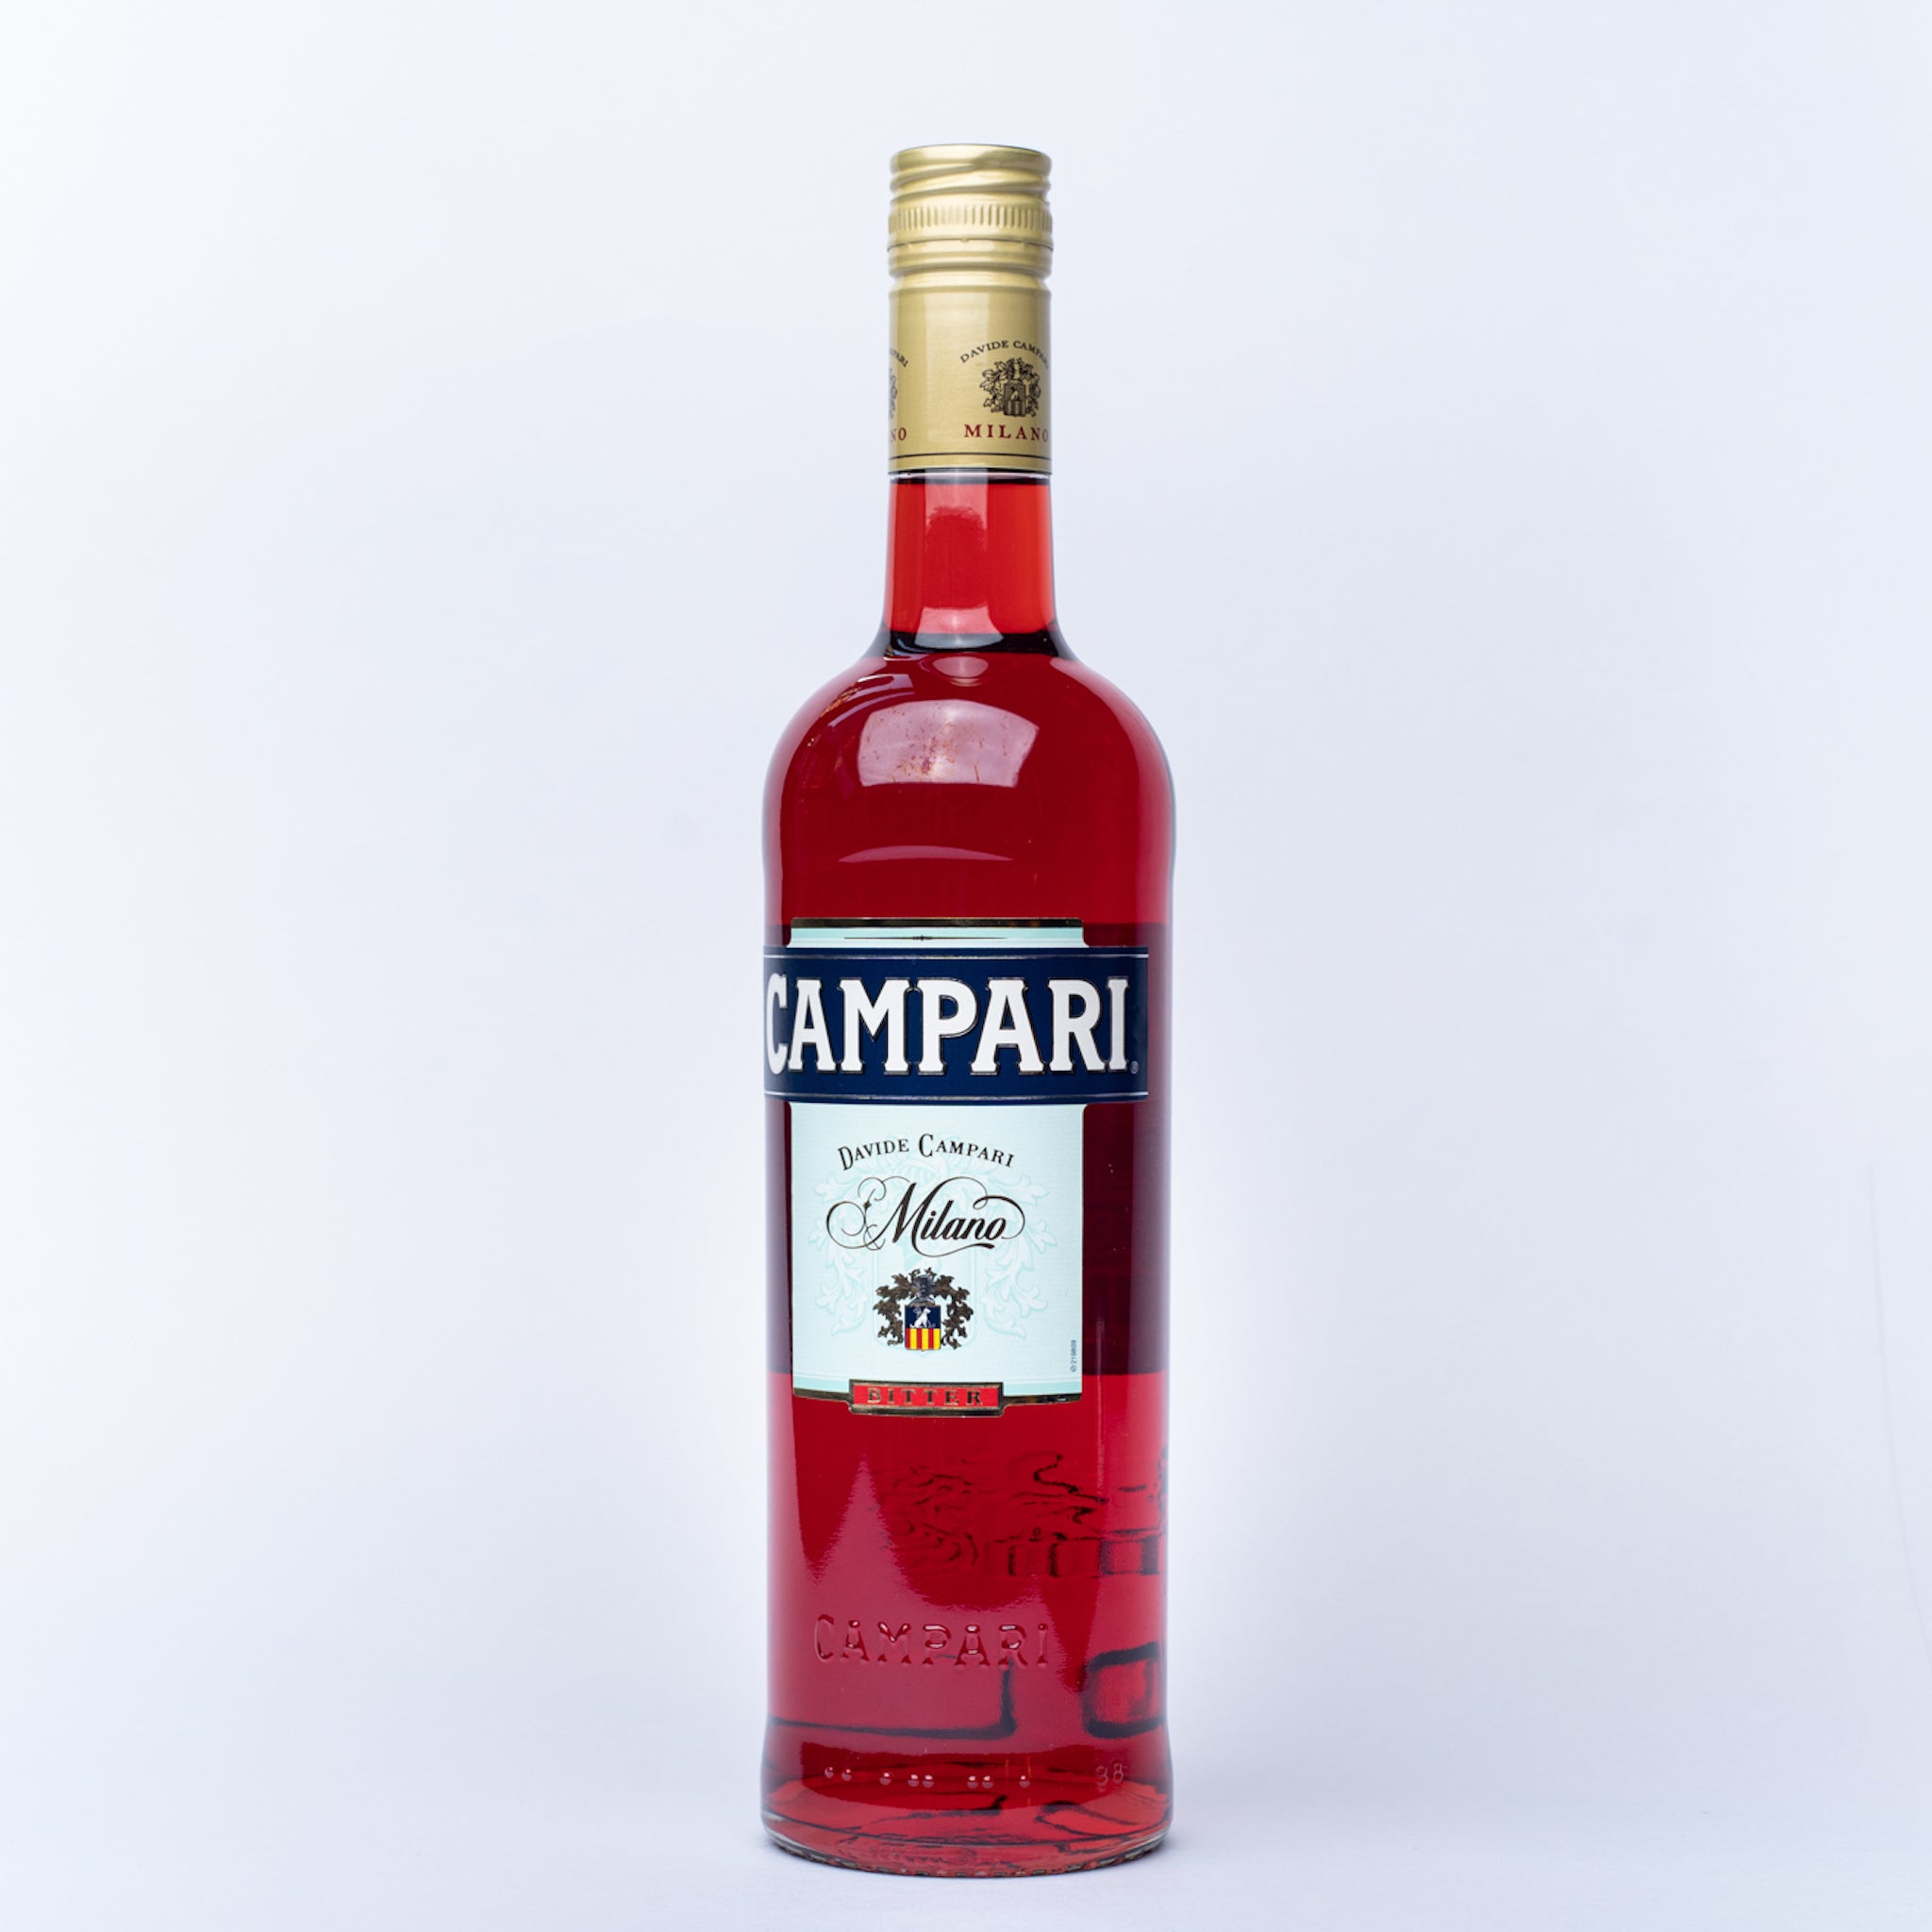 A 700ml bottle of Campari.